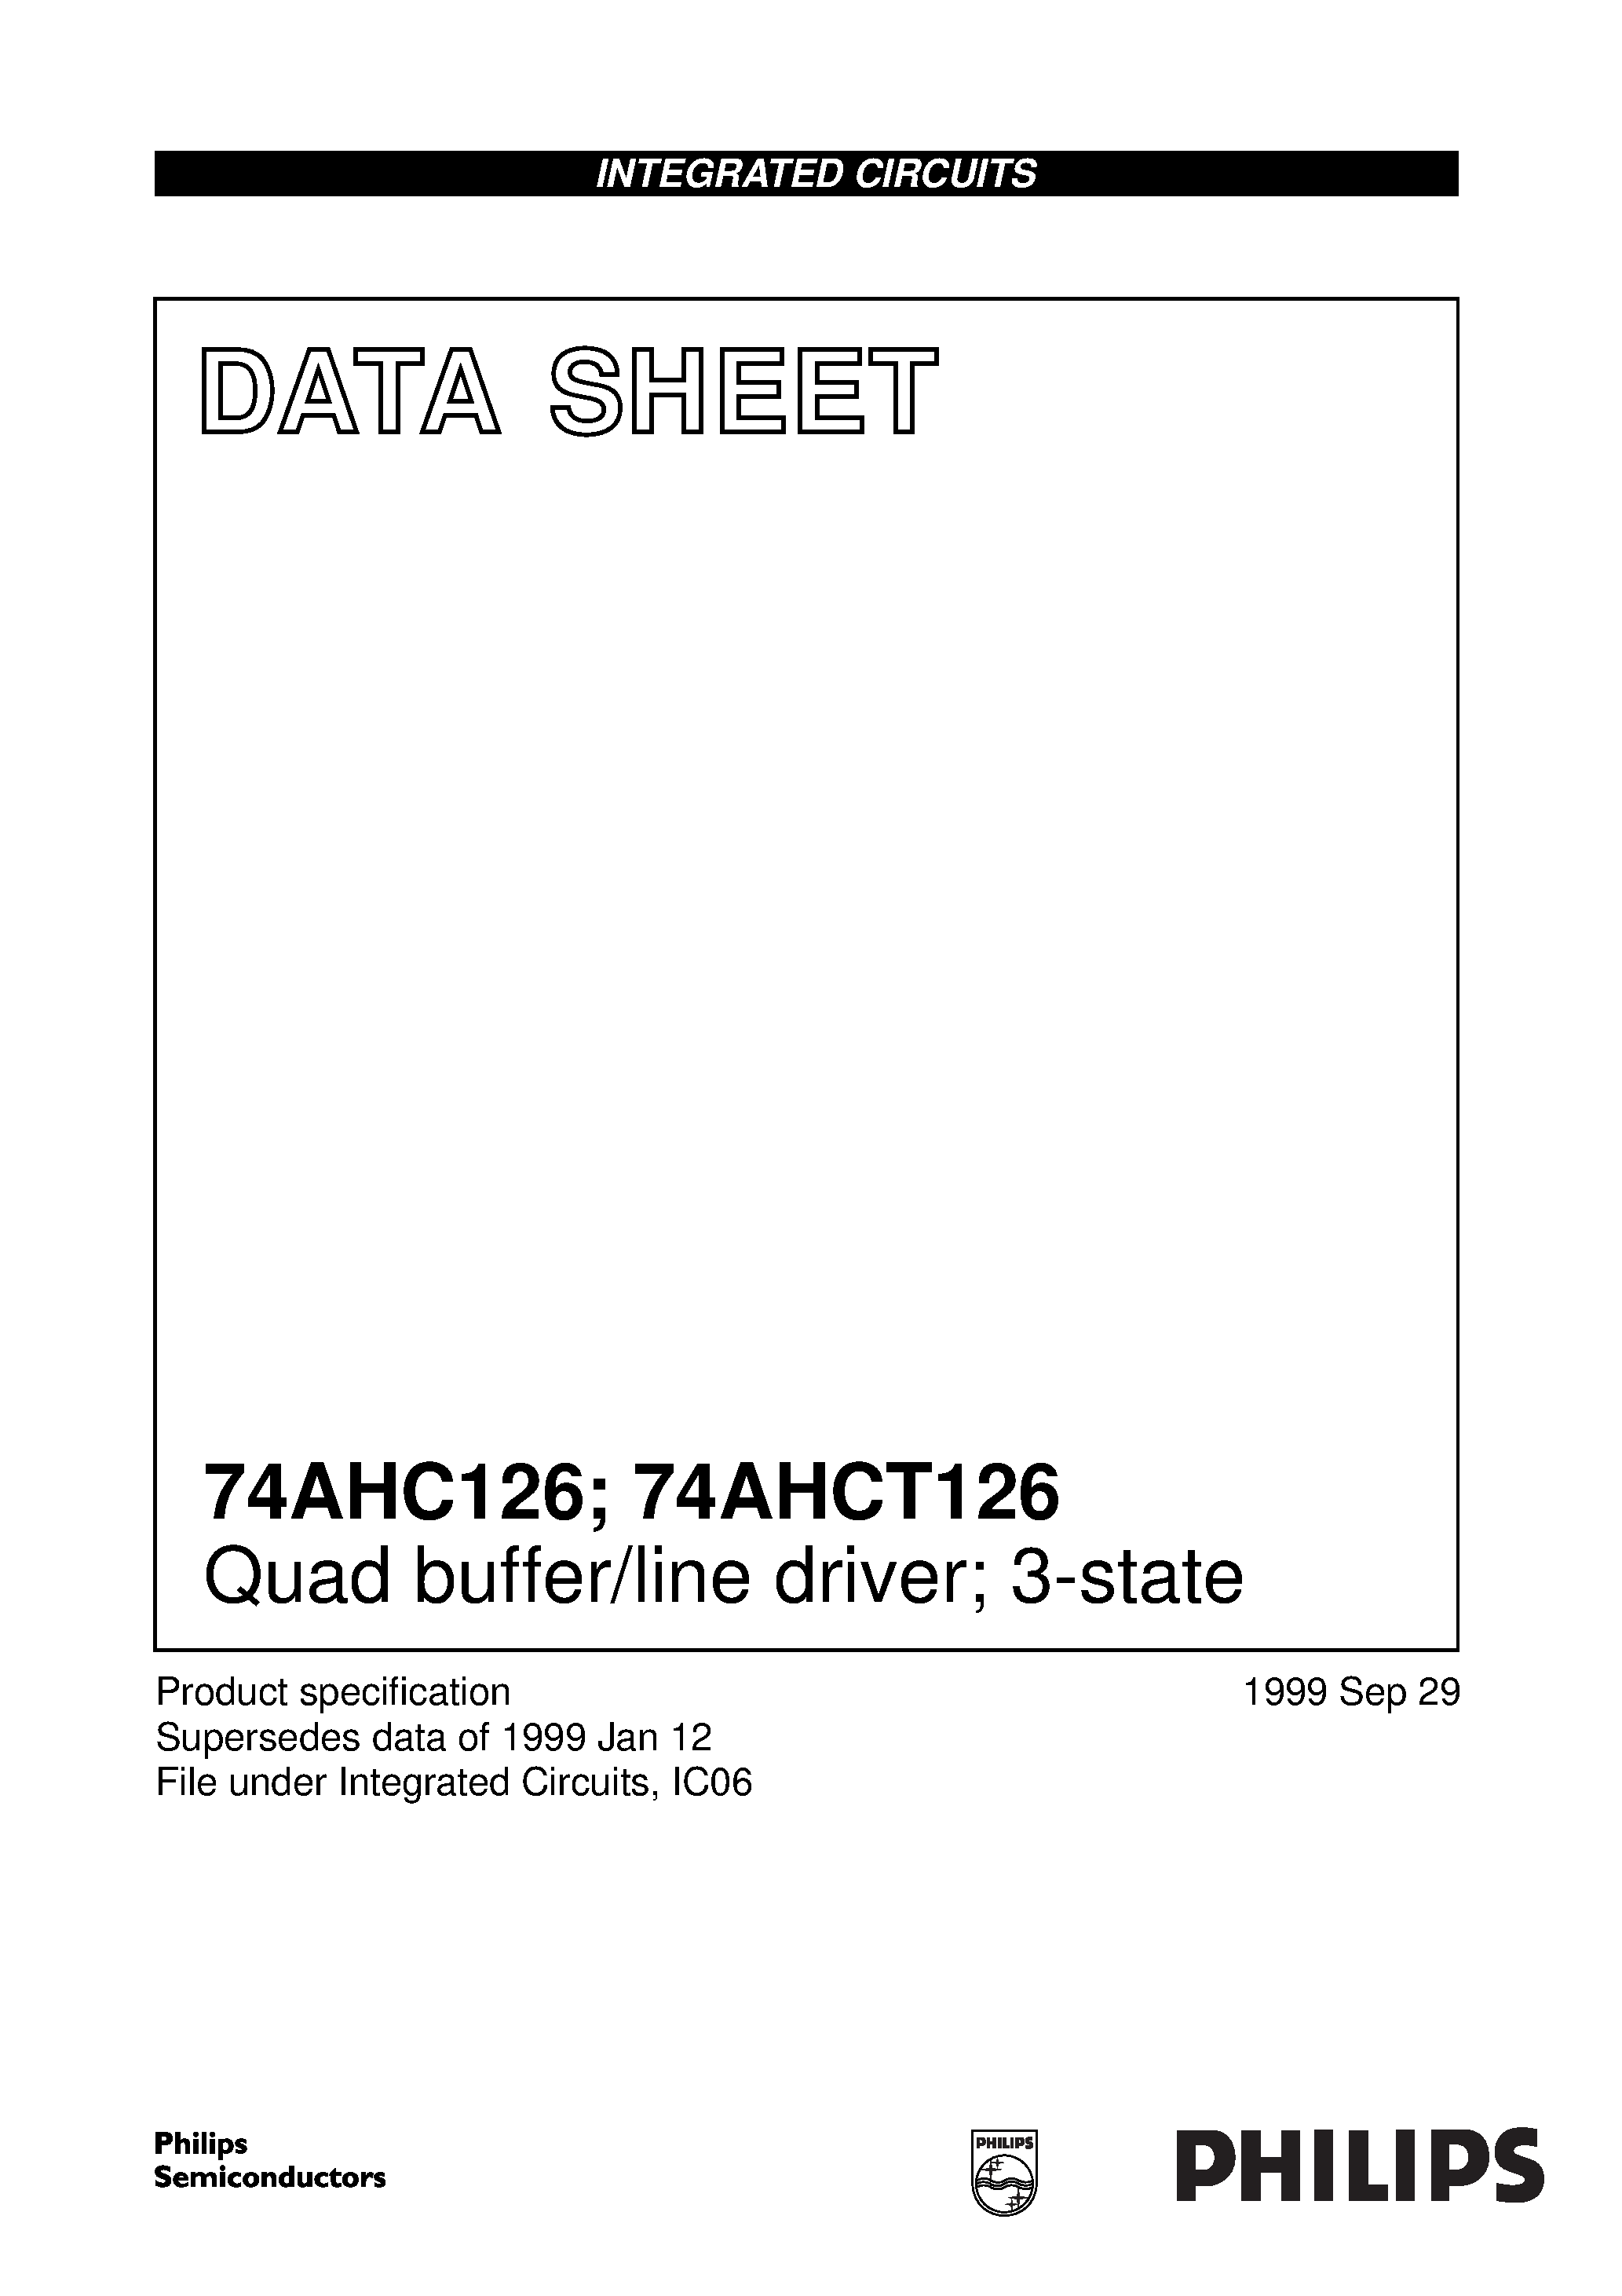 Даташит 74AHC126 - Quad buffer/line driver; 3-state страница 1